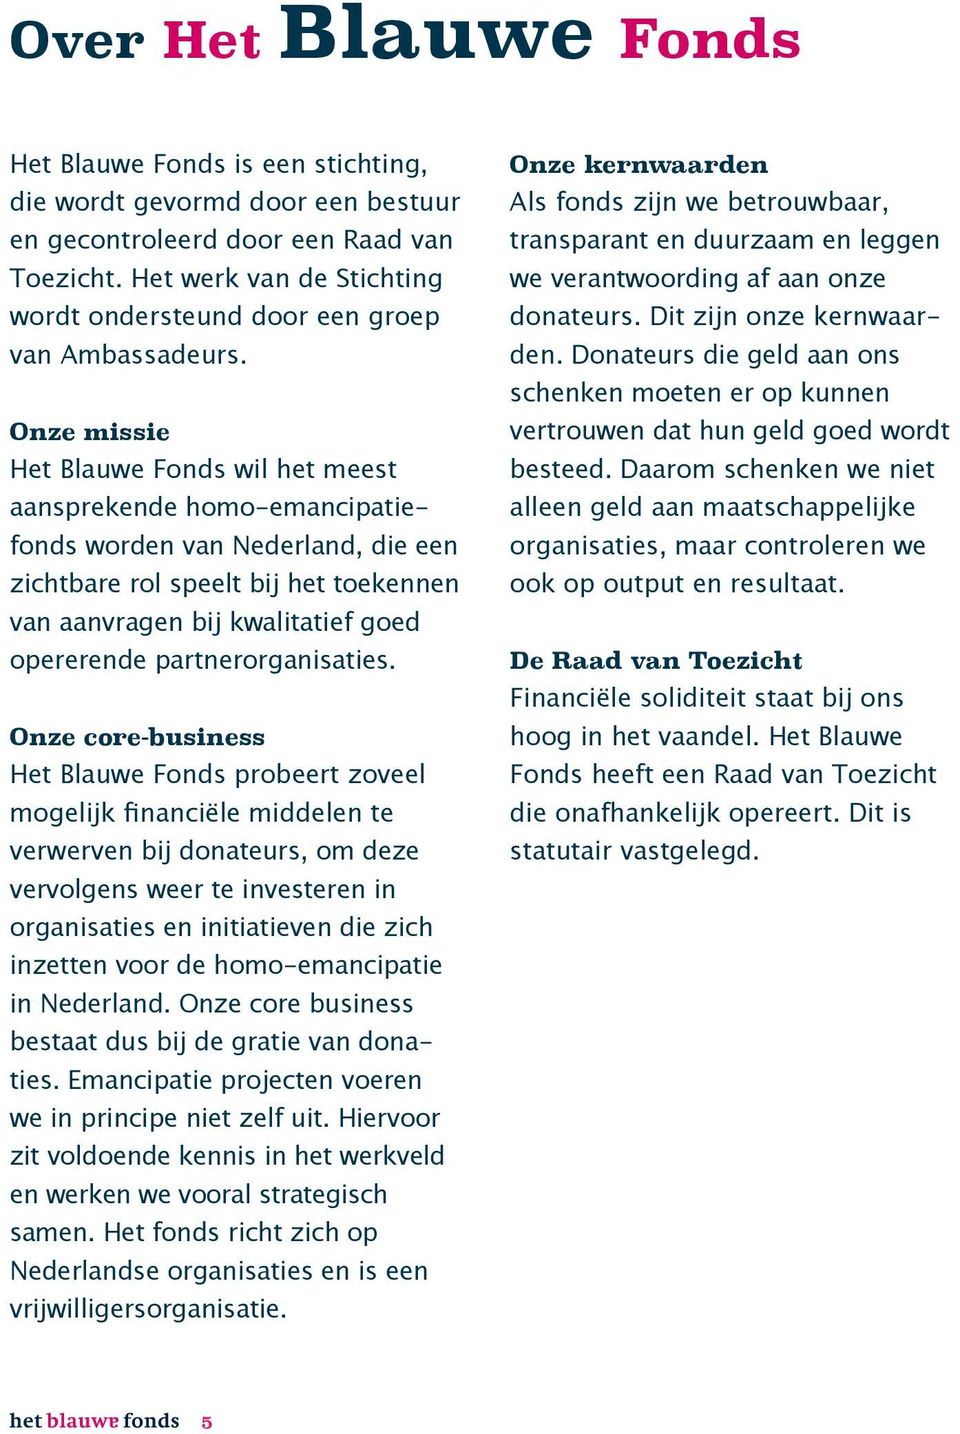 Onze missie Het Blauwe Fonds wil het meest aansprekende homo-emancipatiefonds worden van Nederland, die een zichtbare rol speelt bij het toekennen van aanvragen bij kwalitatief goed opererende